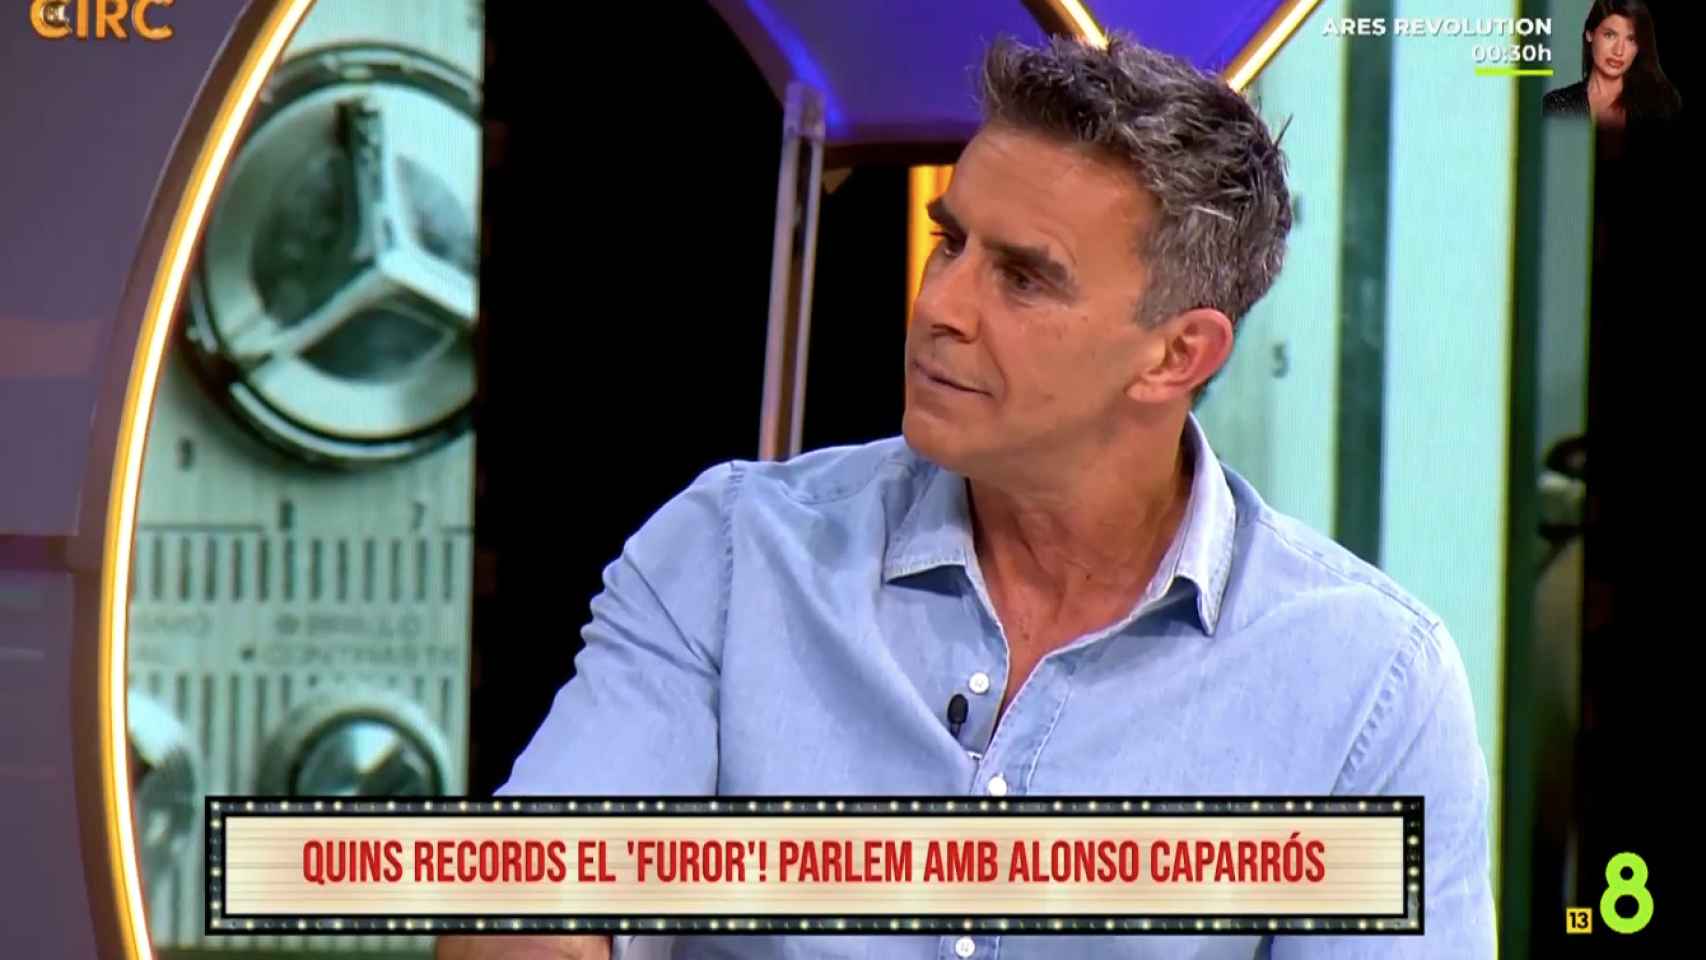 Alonso Caparrós en 'El Circ'.